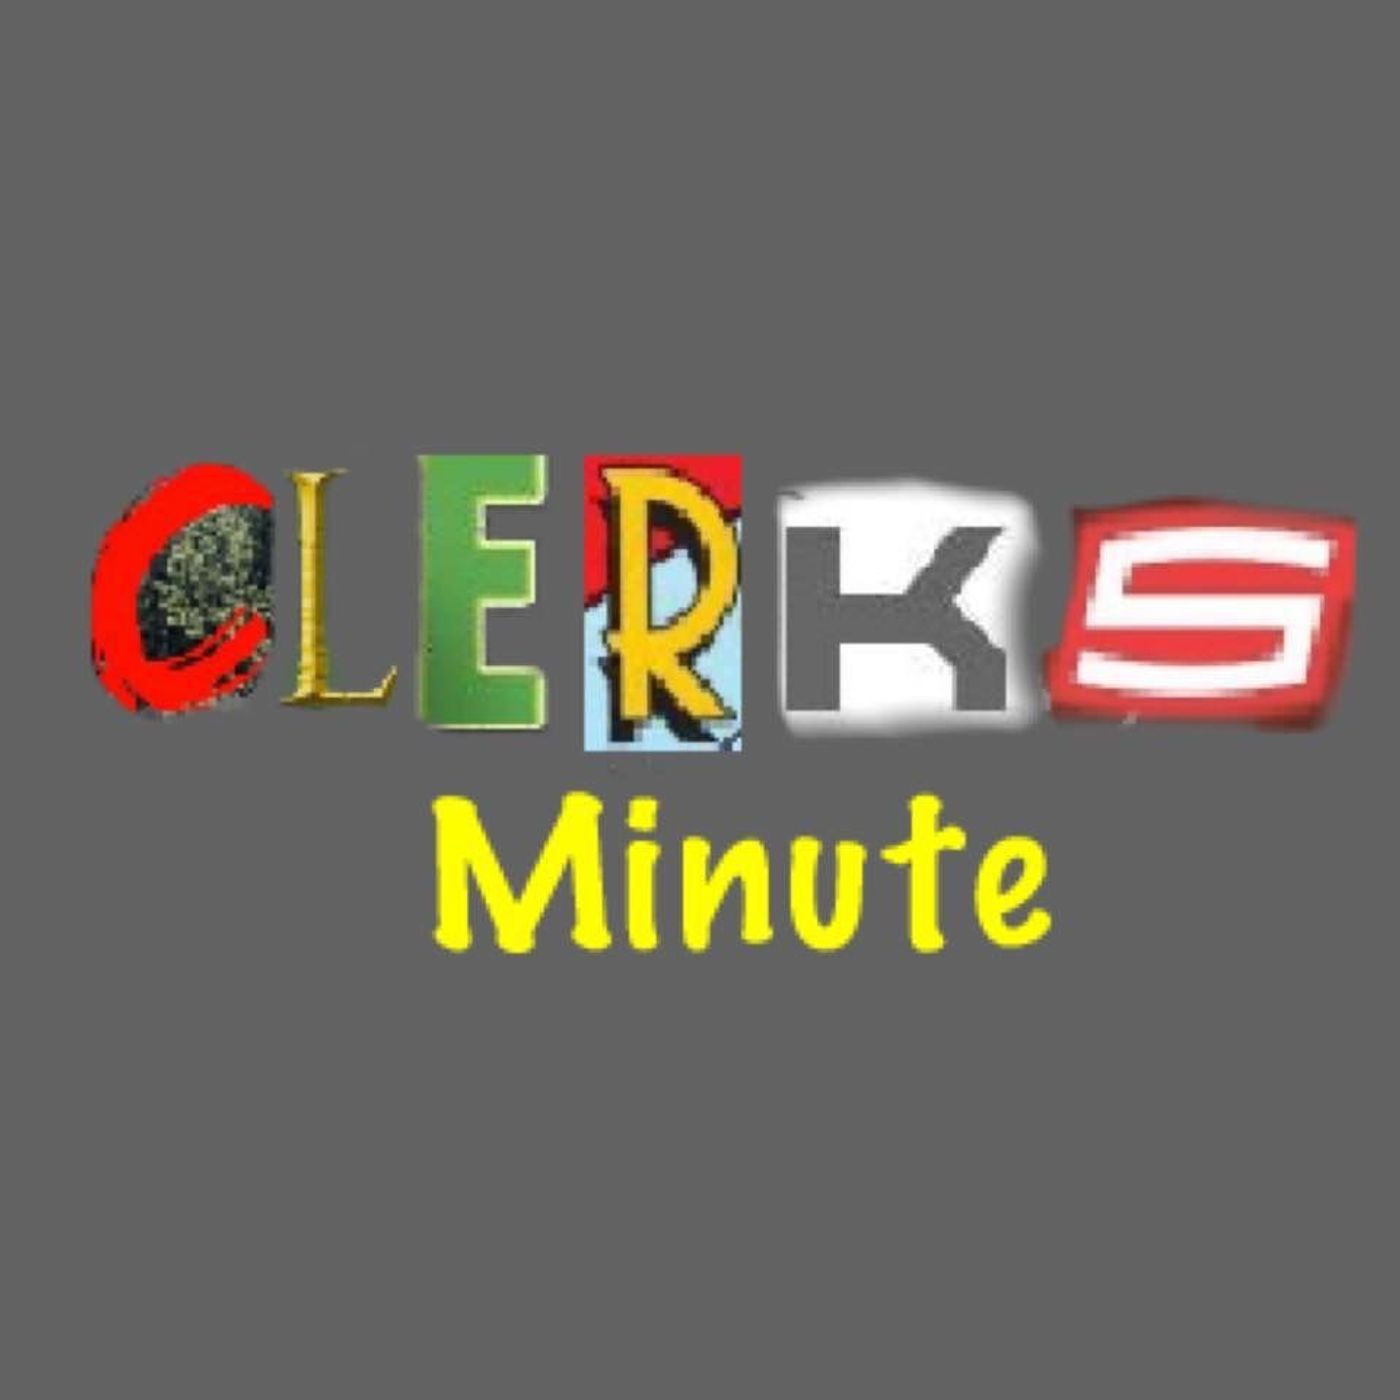 Clerks Minute